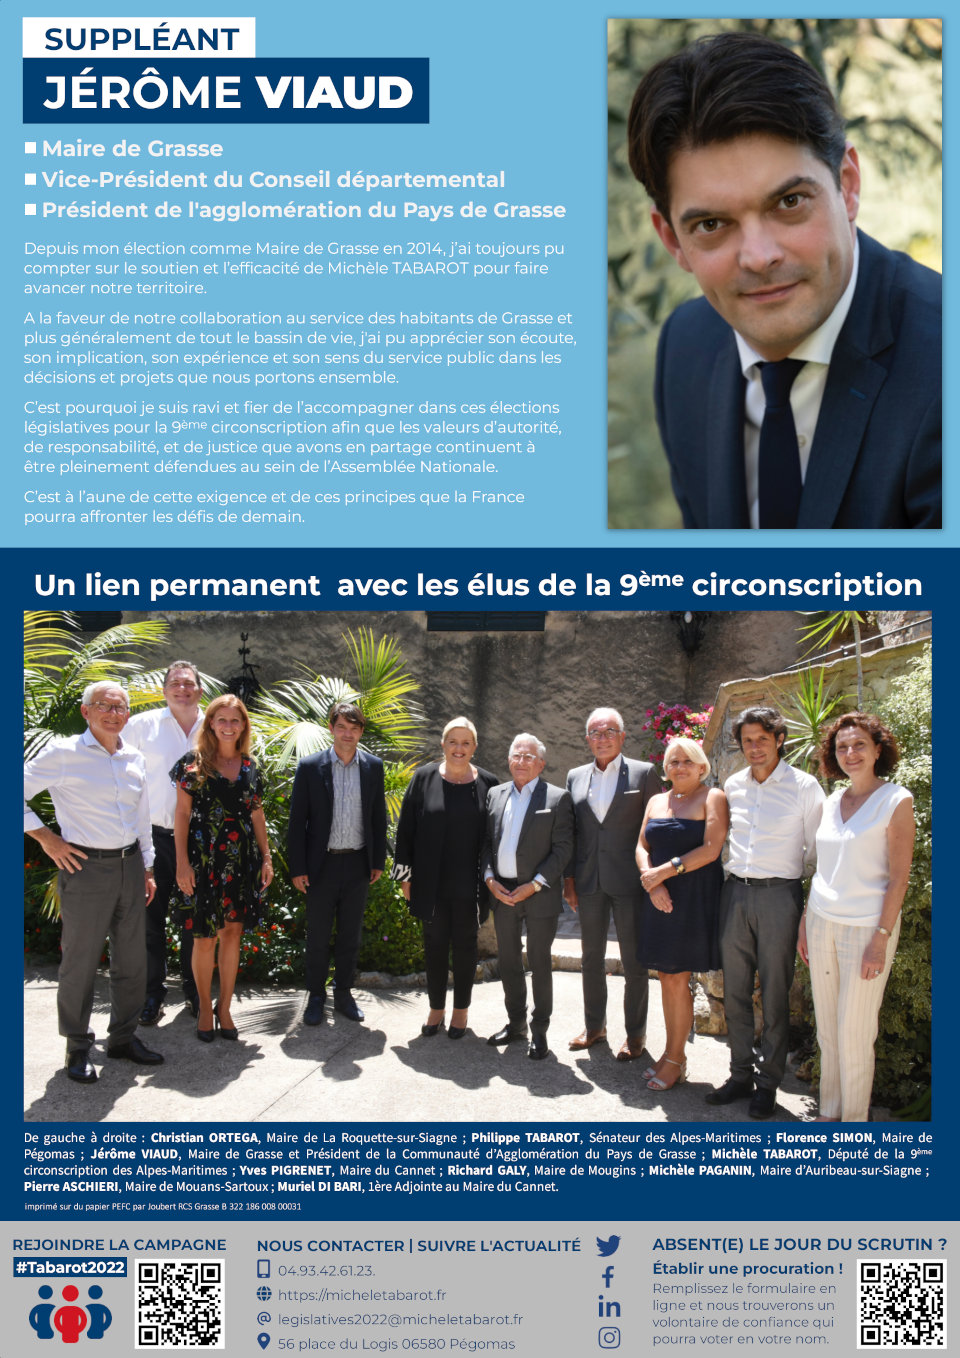 Mon suppléant Jérôme VIAUD et ce lien permanent avec les élus locaux (page 8)